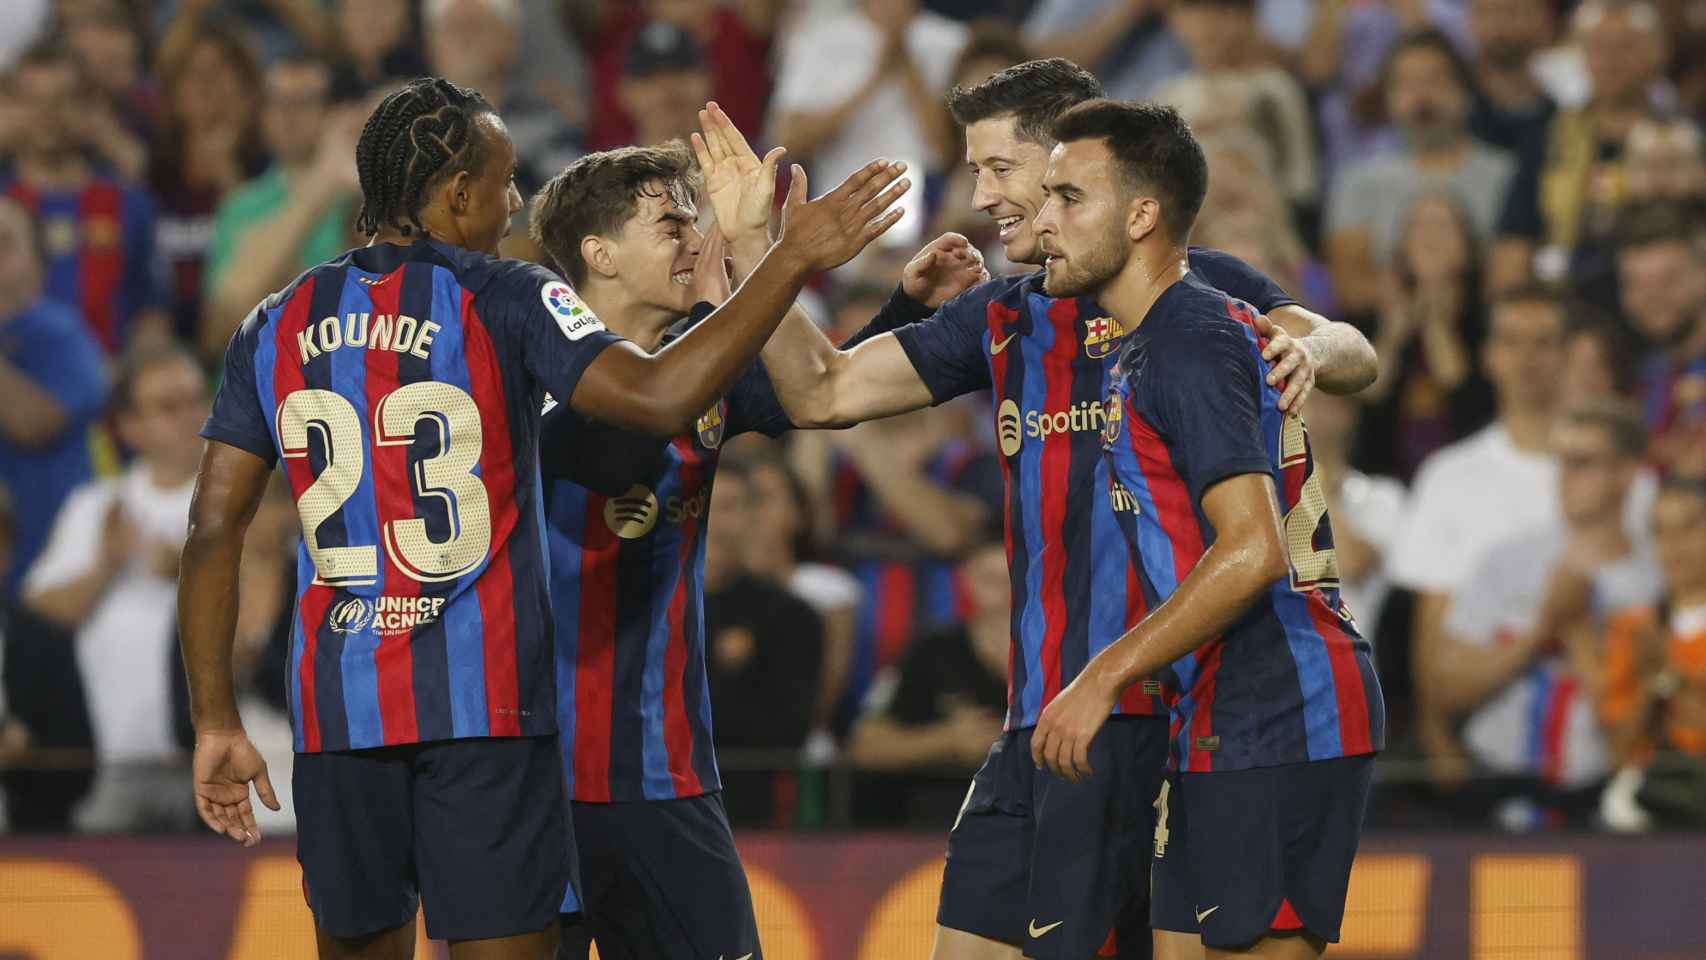 Barcelona 4 0 Athletic, La Liga Resultado, resumen y goleadores del